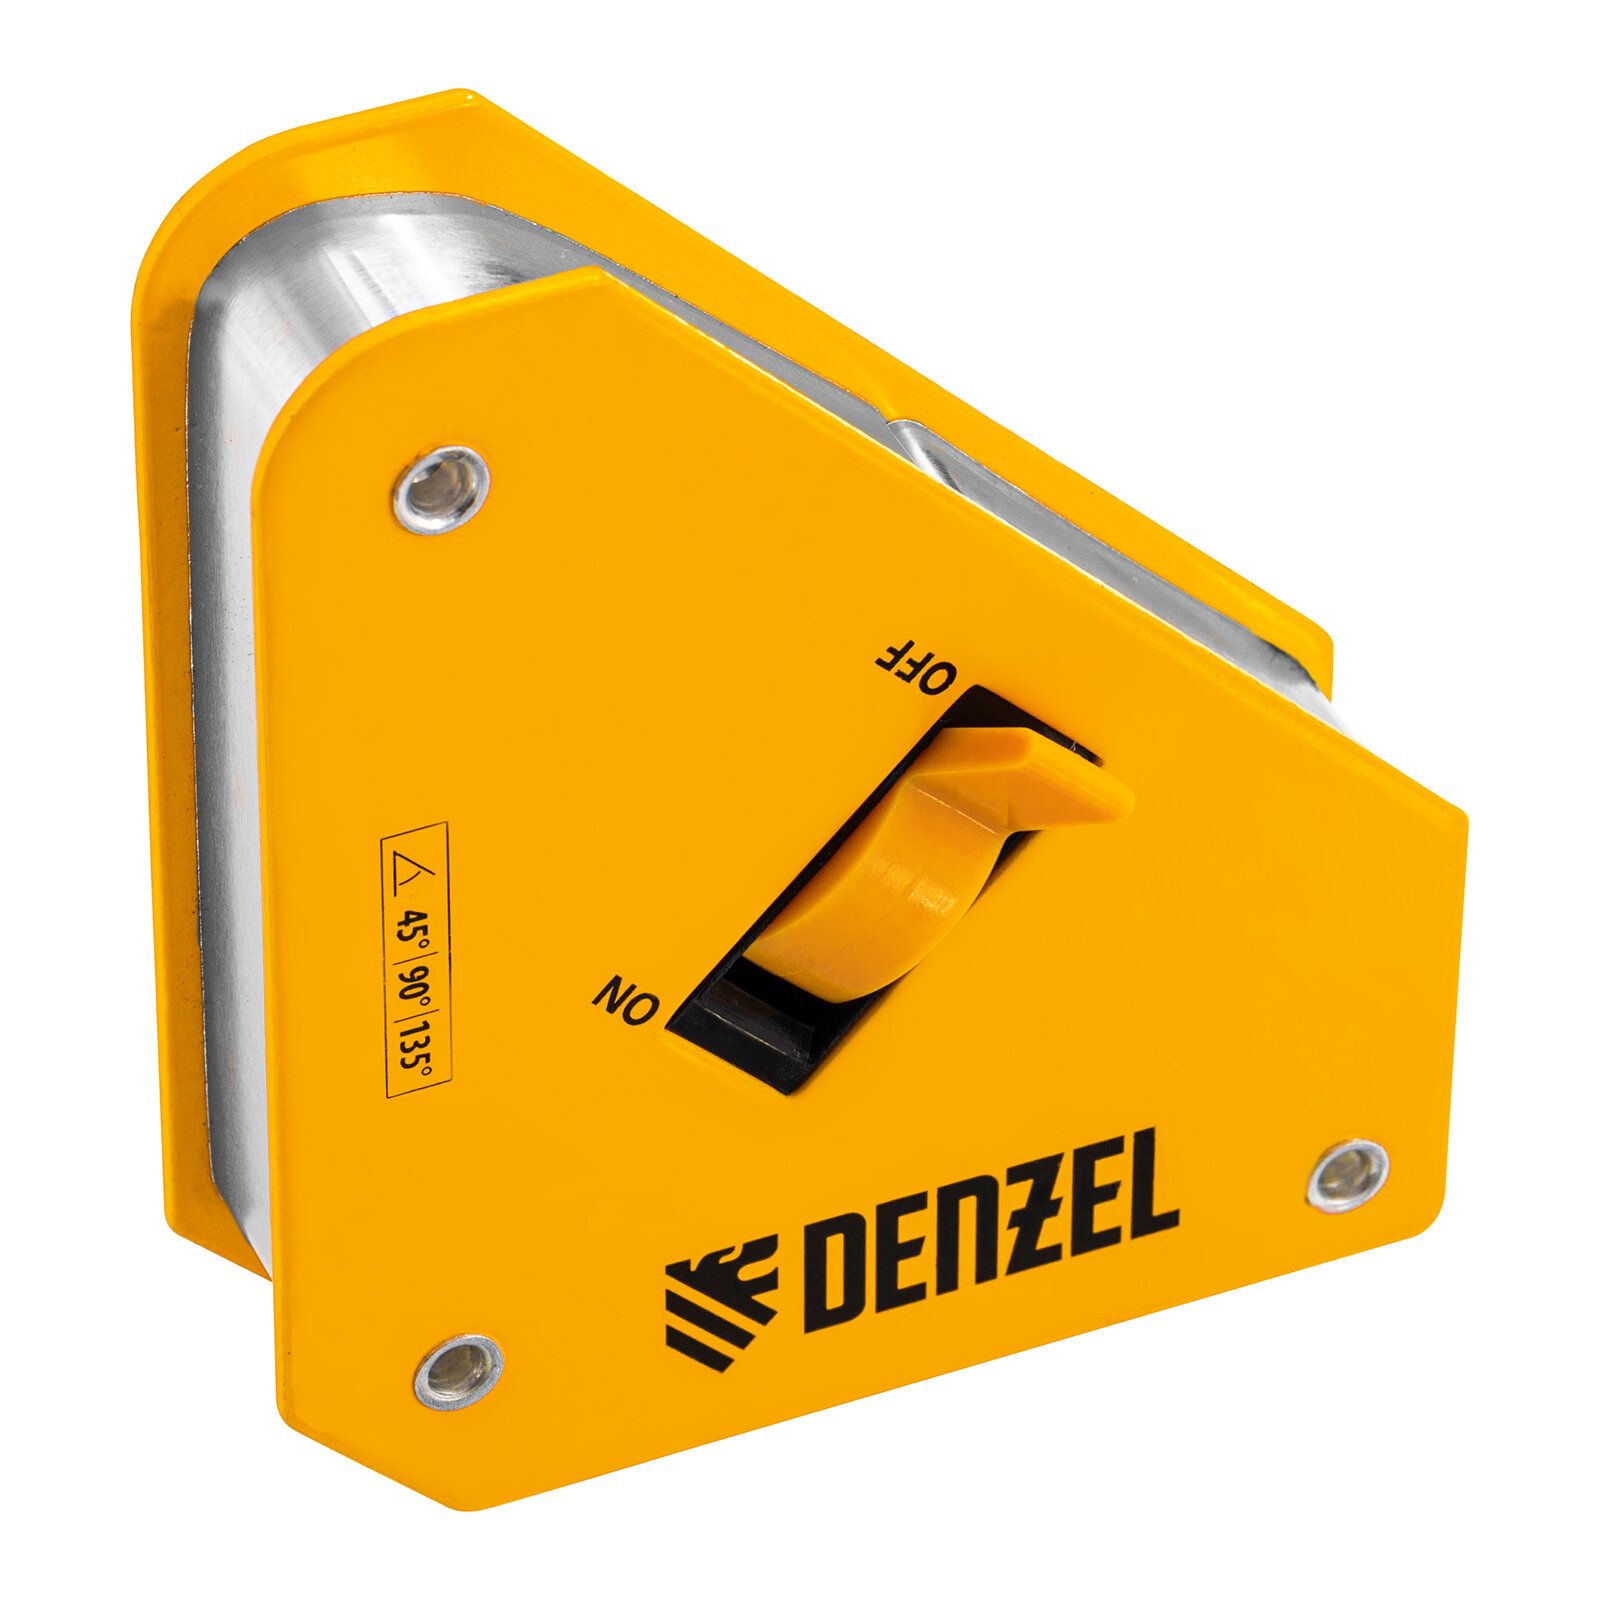 Фиксатор магнитный отключаемый для сварочных работ усилие 30 LB, 45х90 град.// Denzel 97561